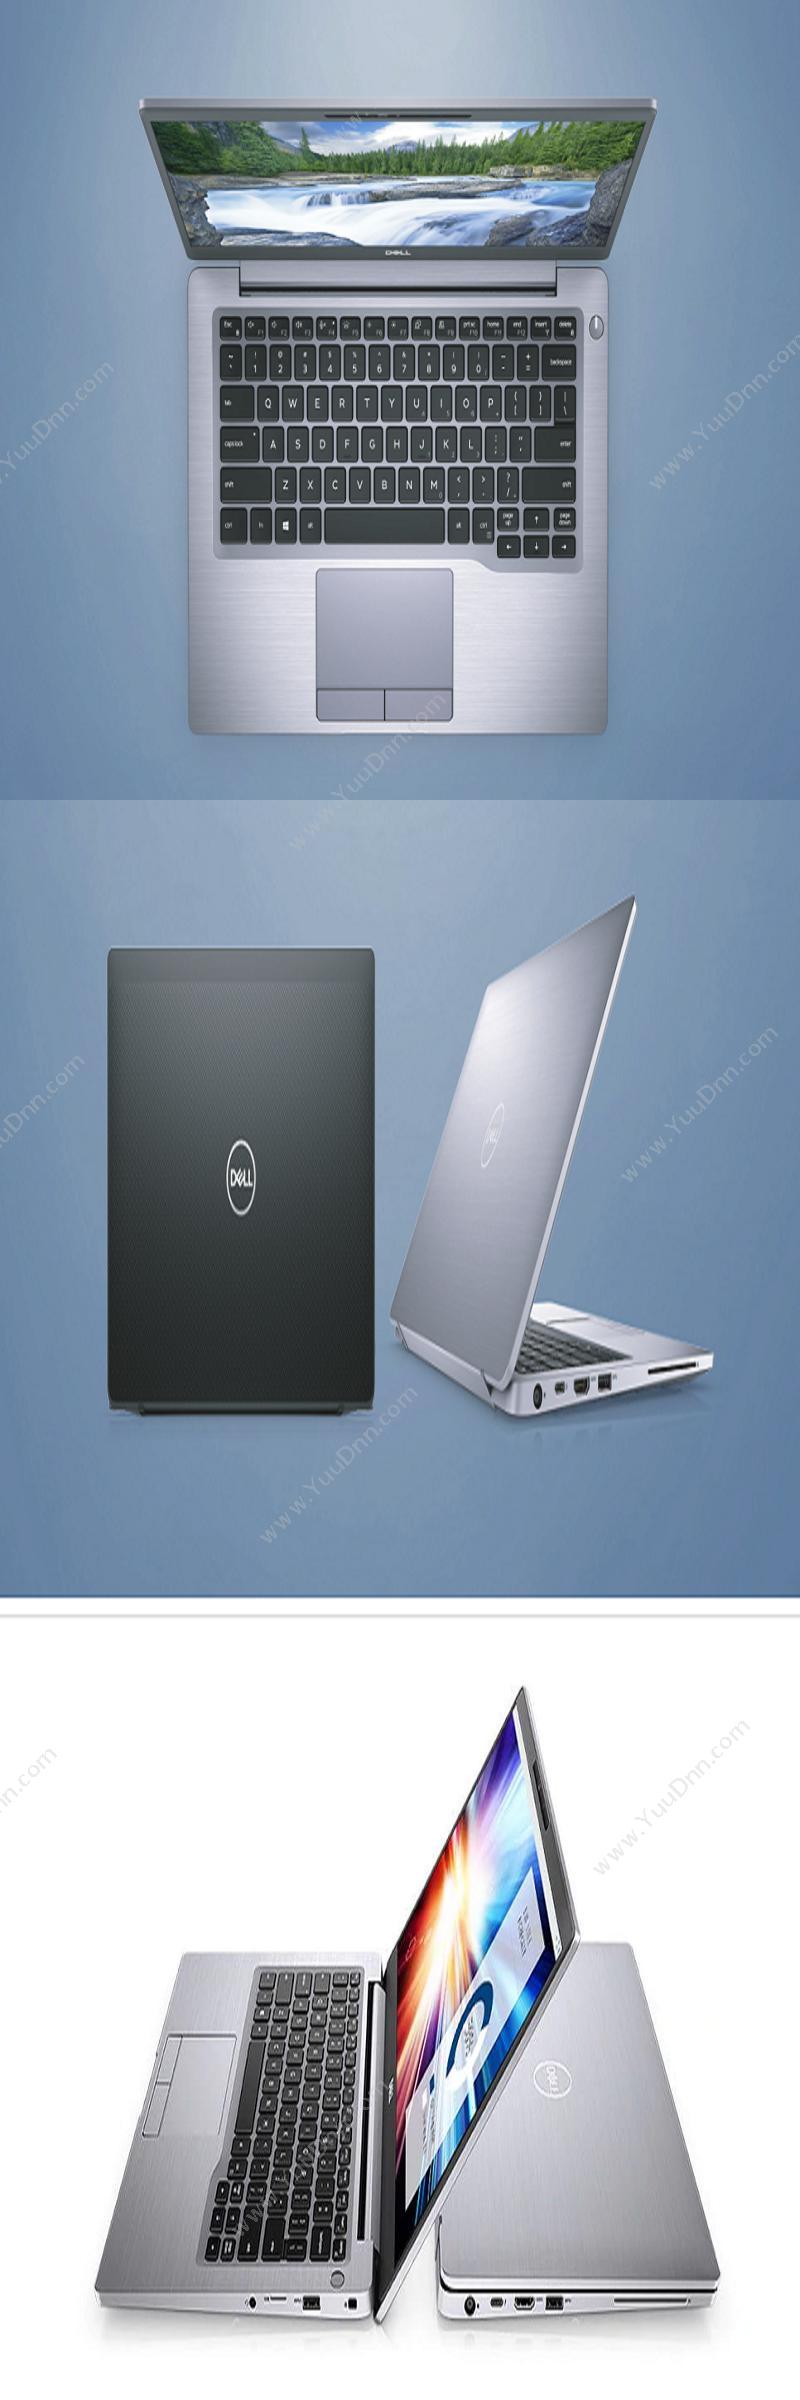 戴尔 Dell Latitude 7400 260040 （i7-8665U处理器/8GB内存/1TB SSD硬盘/14.0寸FHD/集成显卡/指纹识别） 笔记本